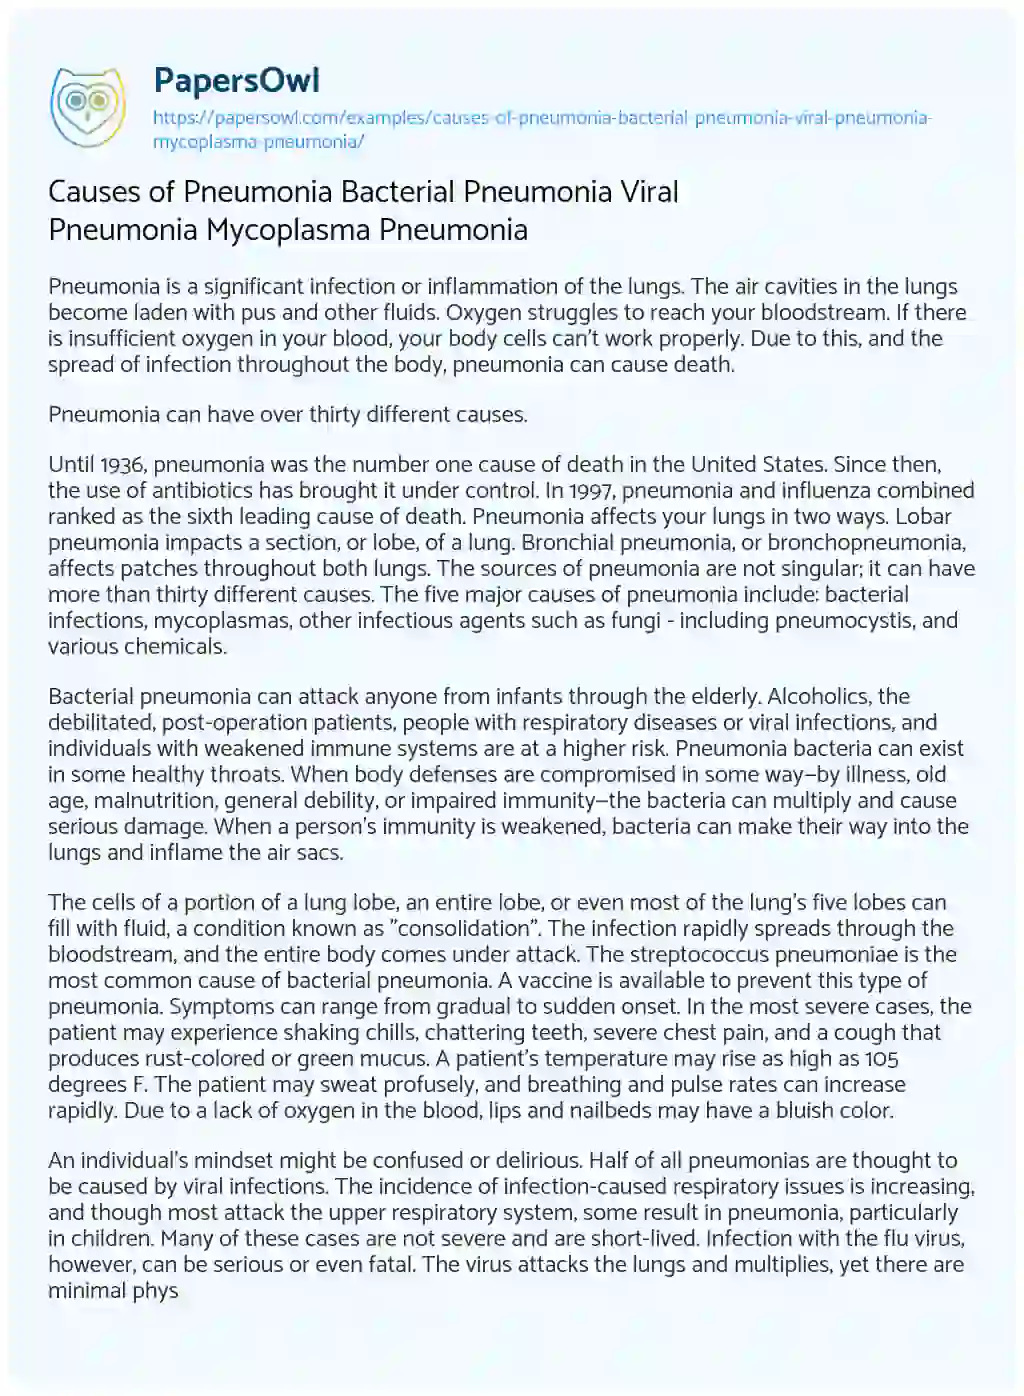 Causes of Pneumonia Bacterial Pneumonia Viral Pneumonia Mycoplasma Pneumonia essay